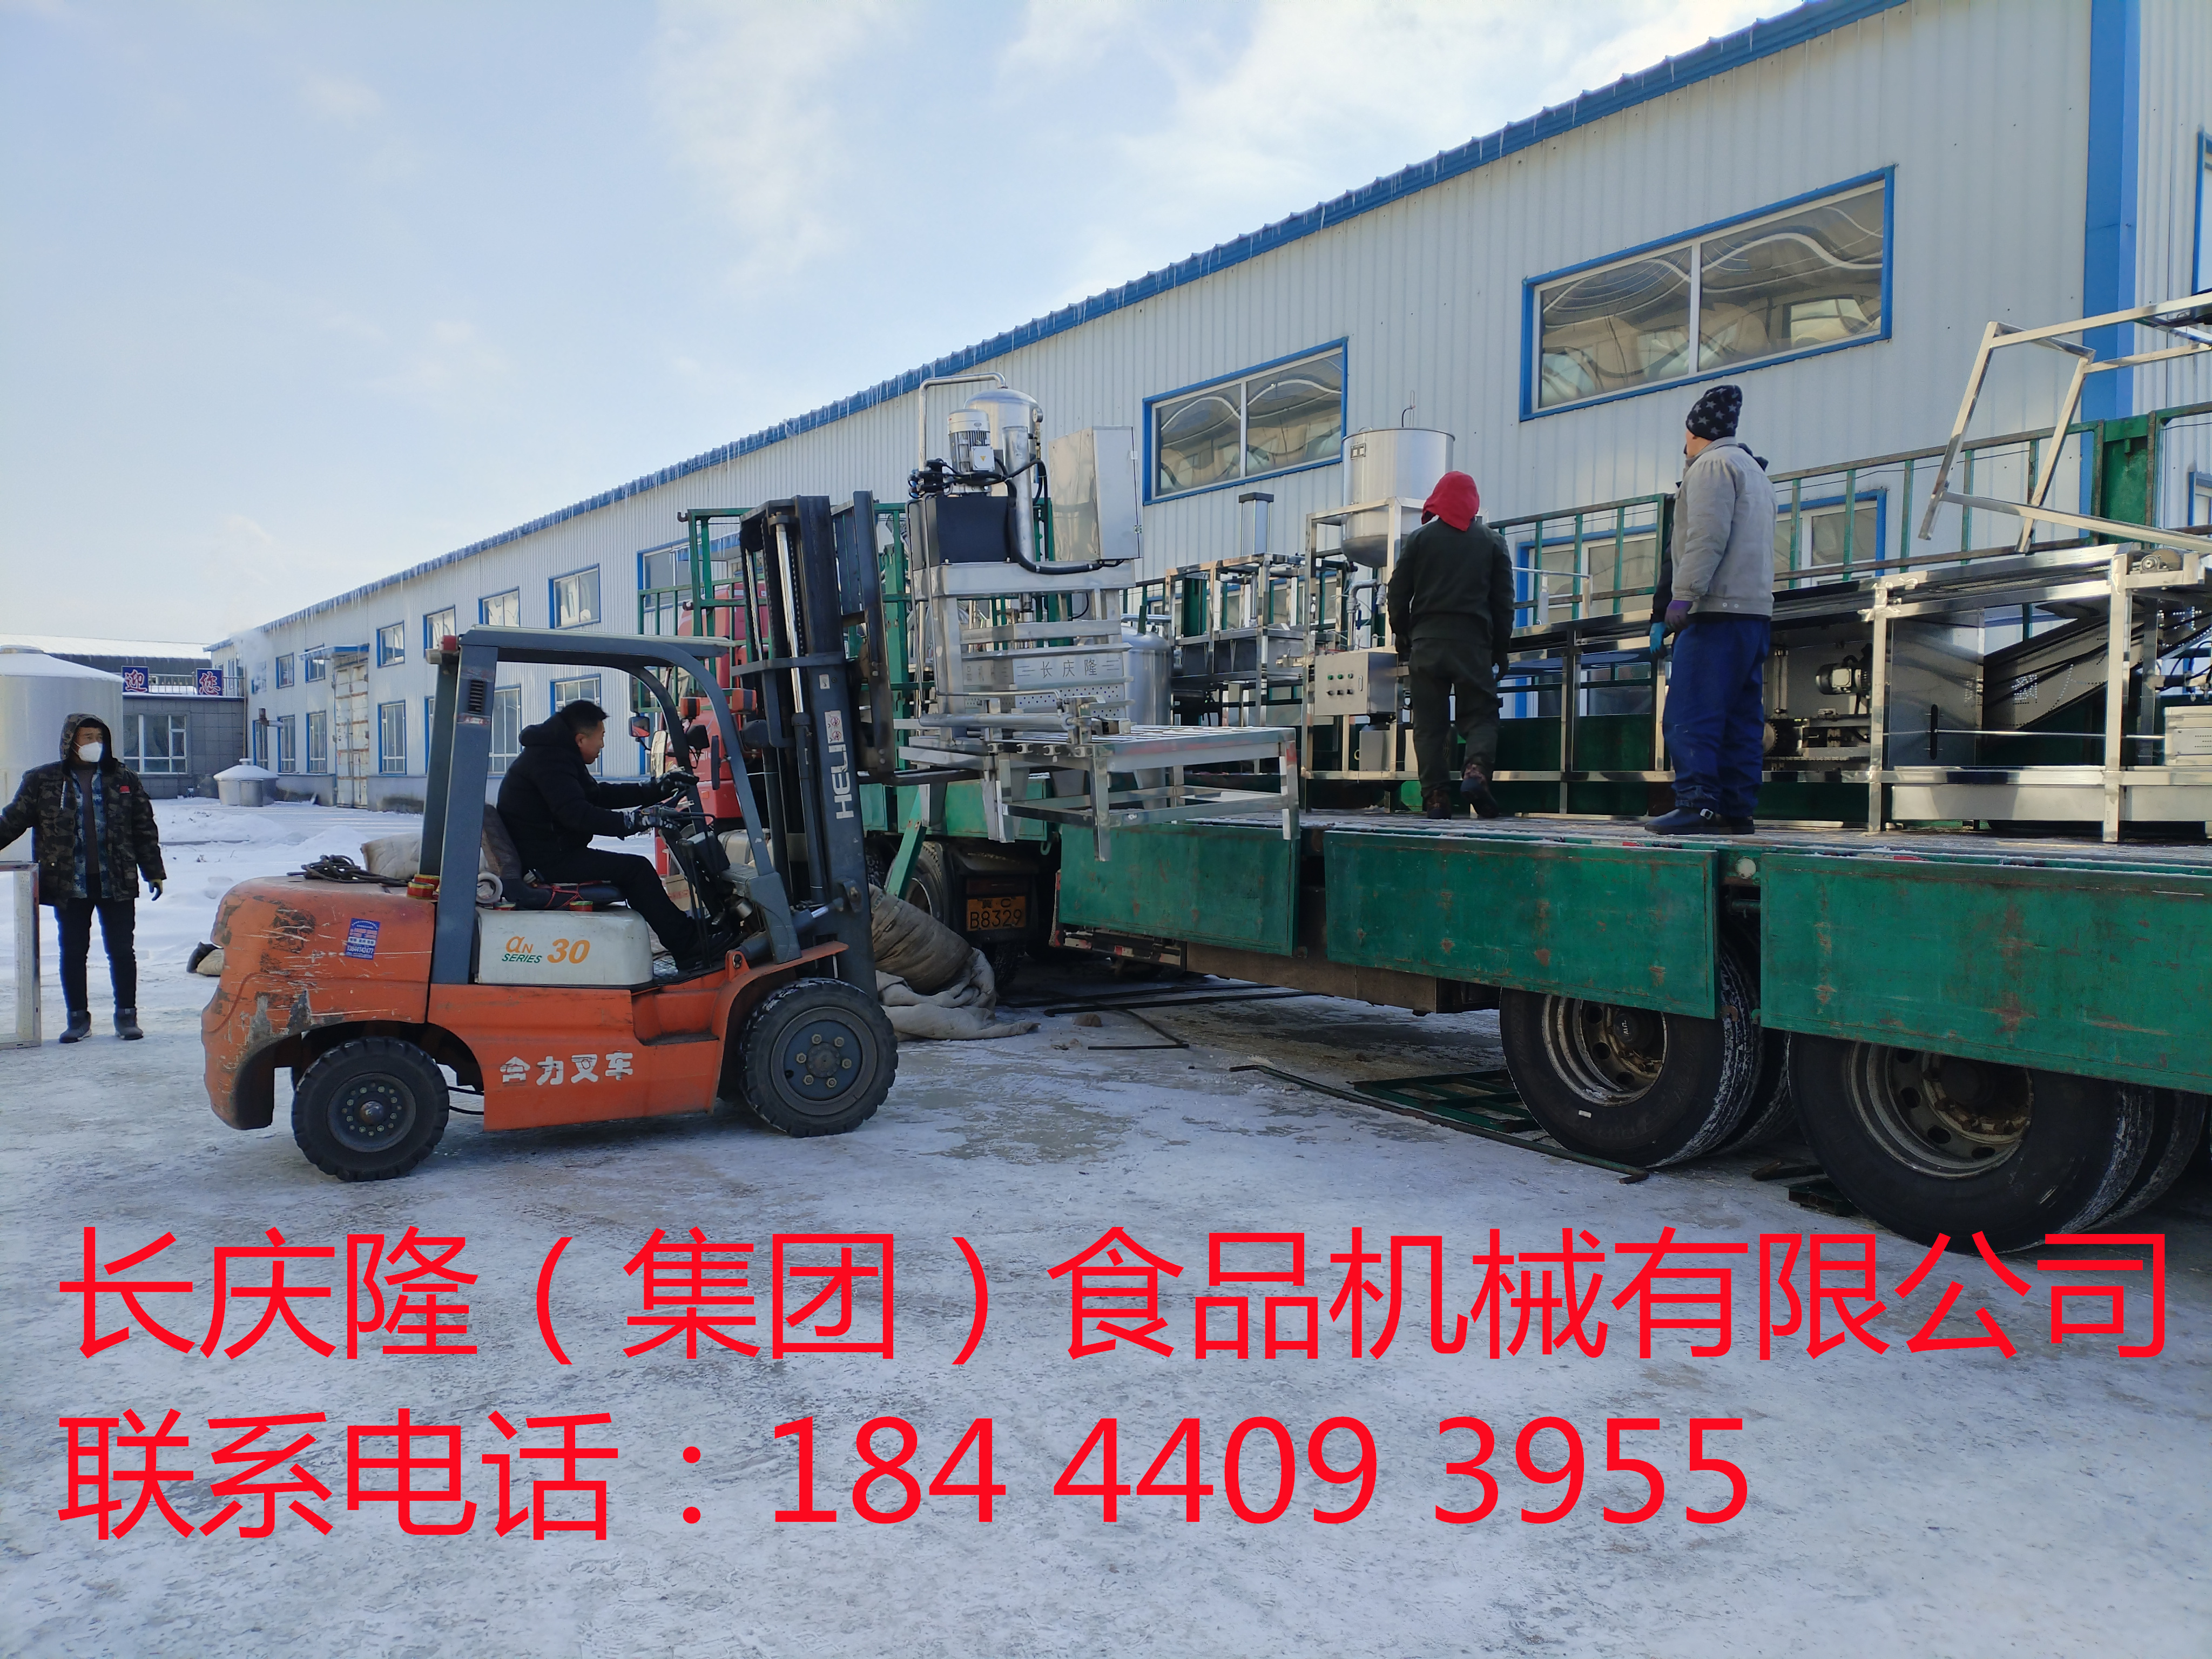 河北滦县客户订购的大型干豆腐机生产线马上装车 (10)_副本.jpg